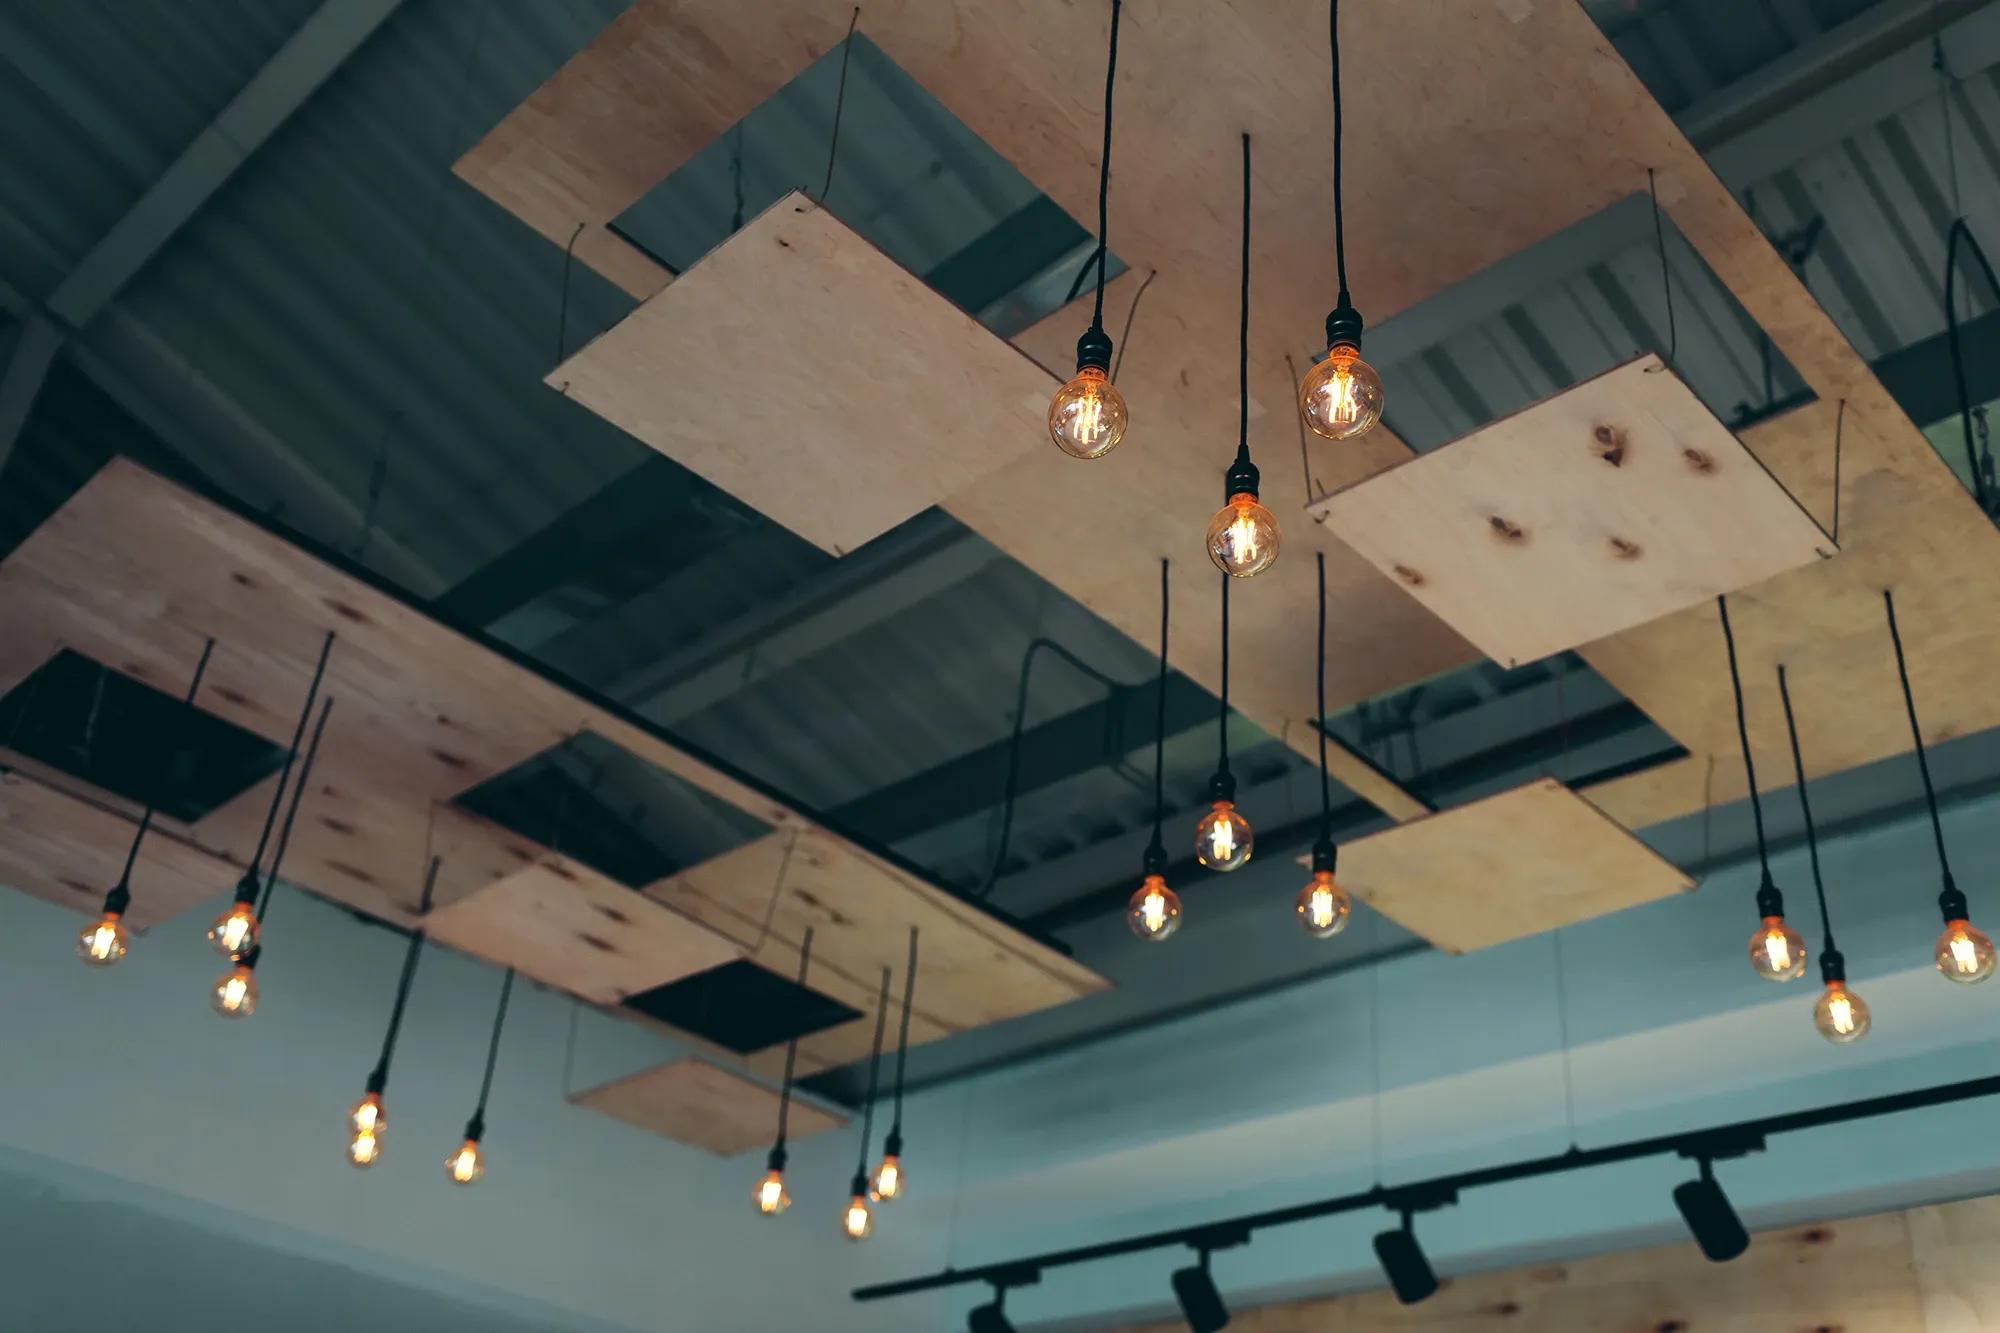 Modernt innertak i industrial och popkonststil med hängande glödlampor, utfört i kontorslokal av proffs och hantverkare inom undertak och akustik